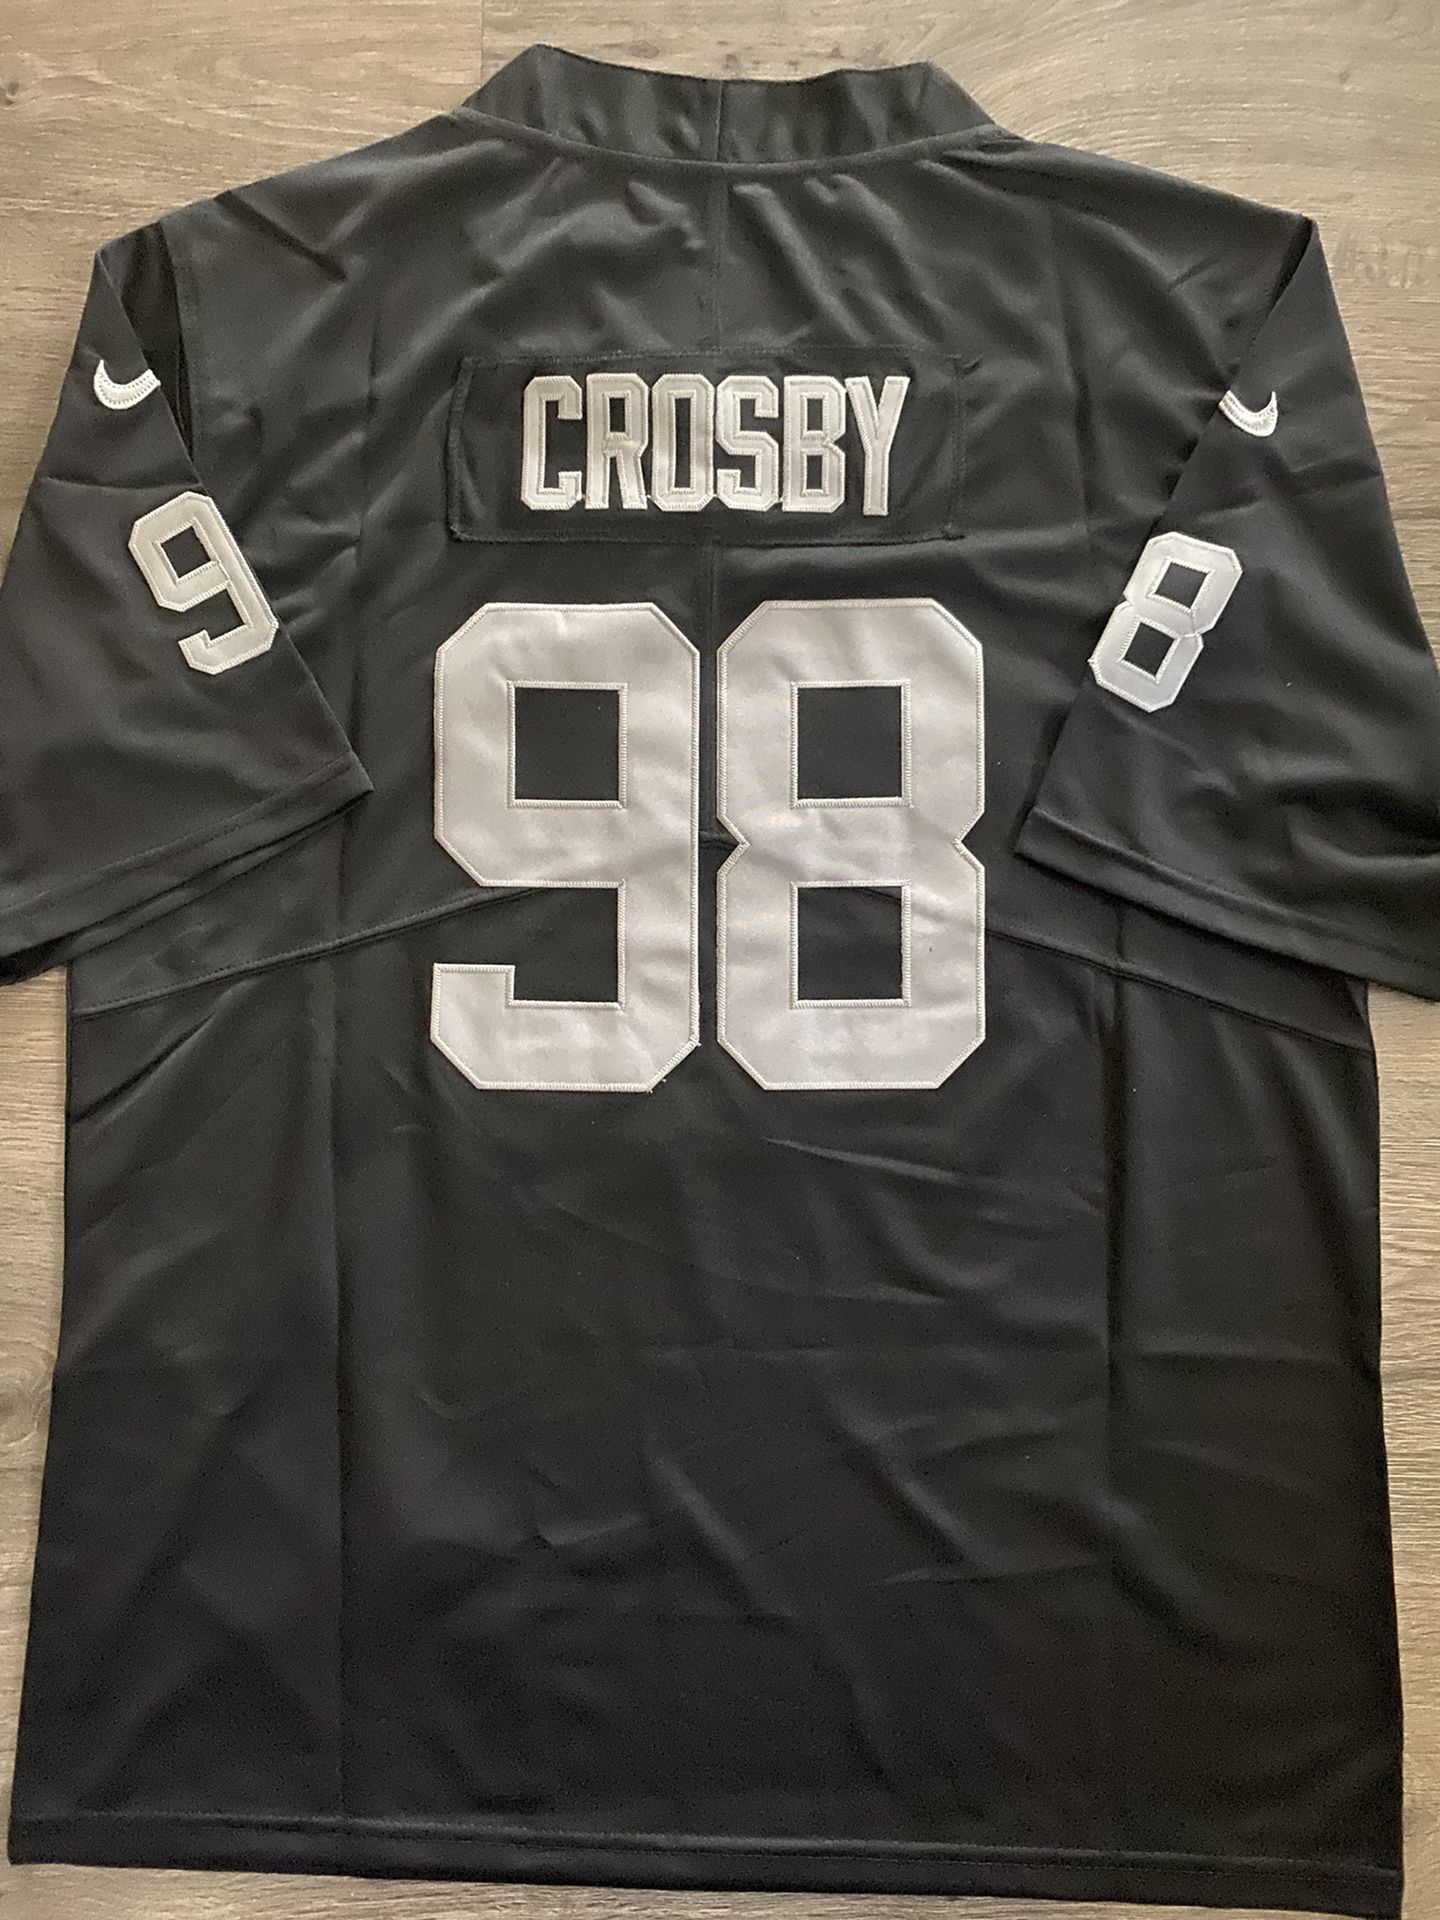 Raiders Maxx Crosby 98 Black Home jersey mens small medium large XL 2X 3X